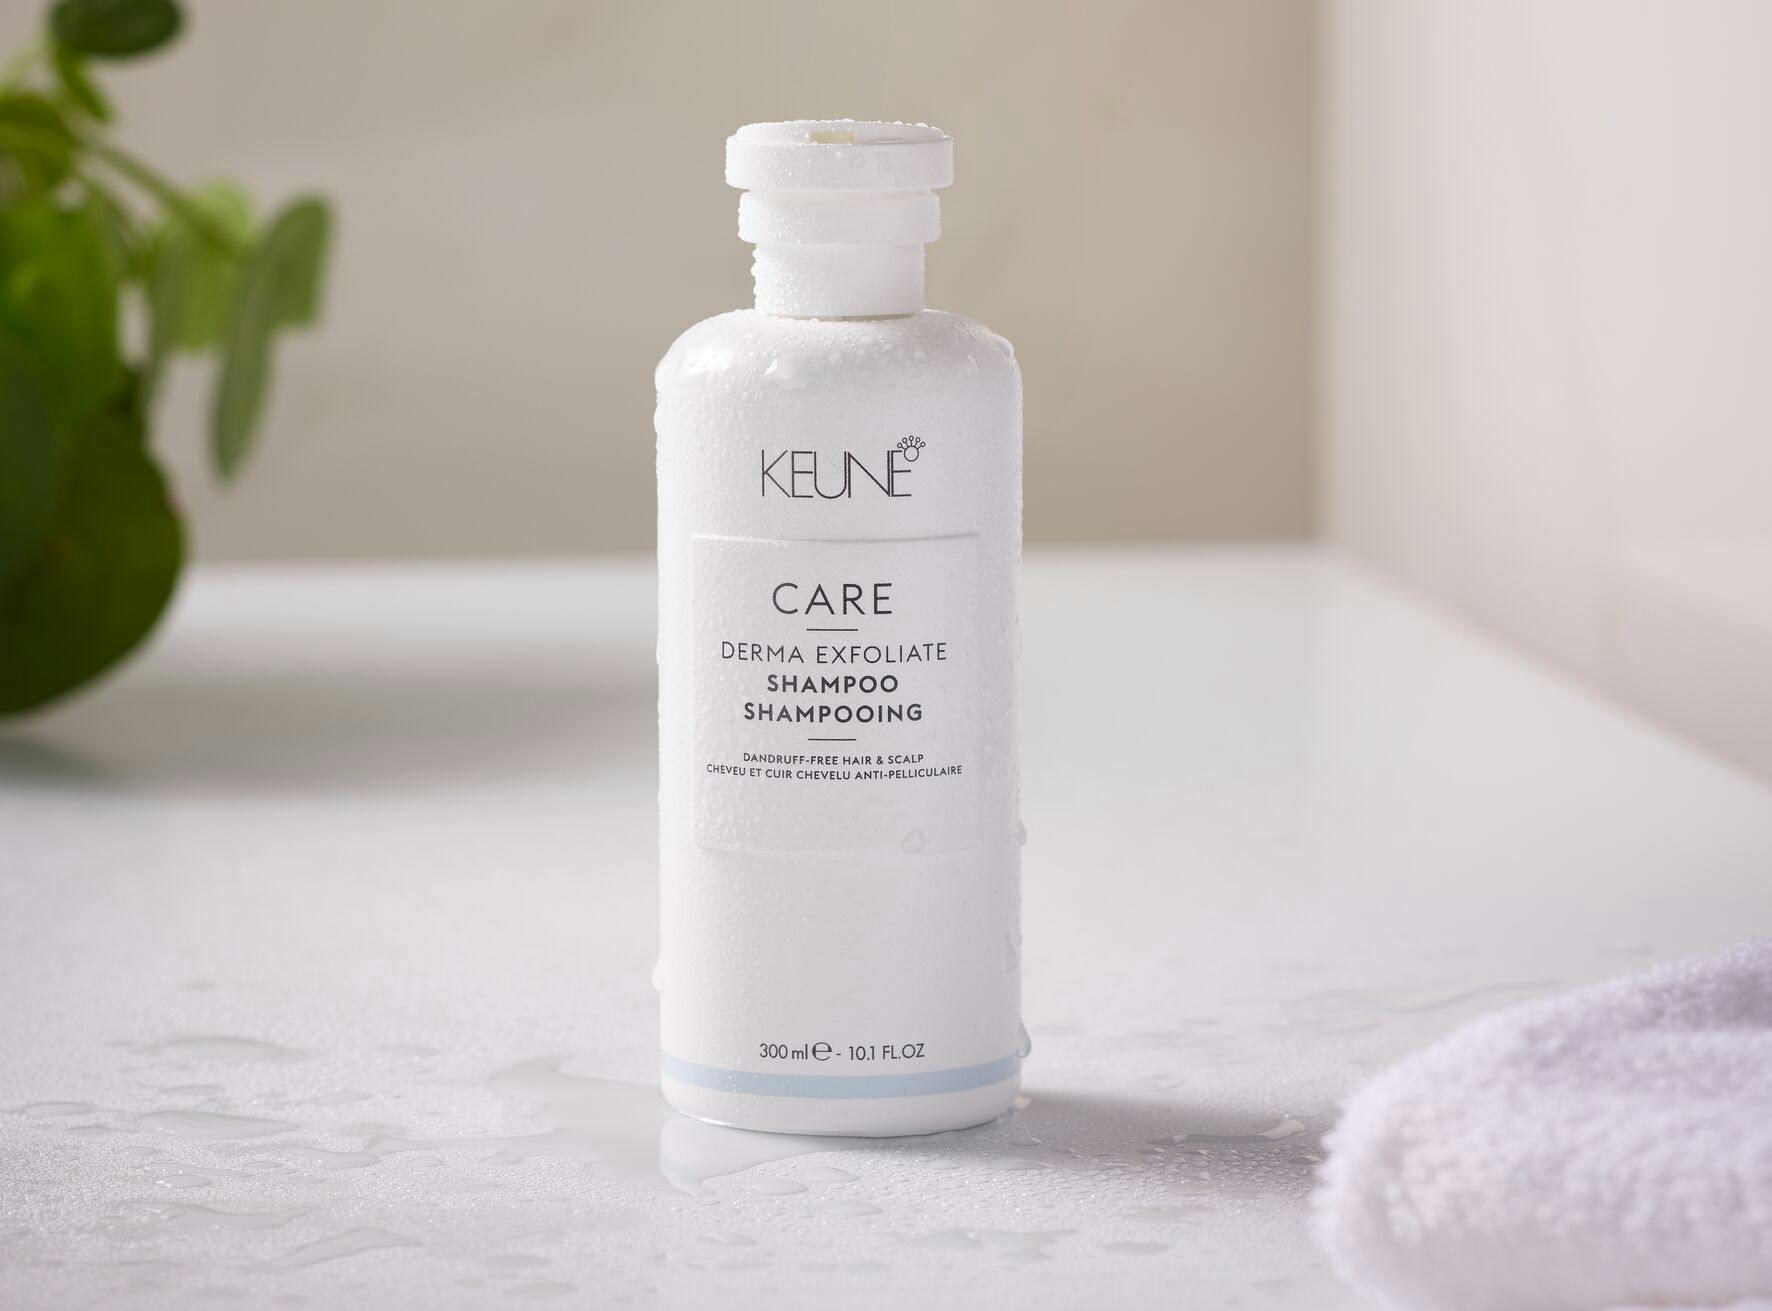 Foto van fles Keune Care Derma Exfoliate Shampoo